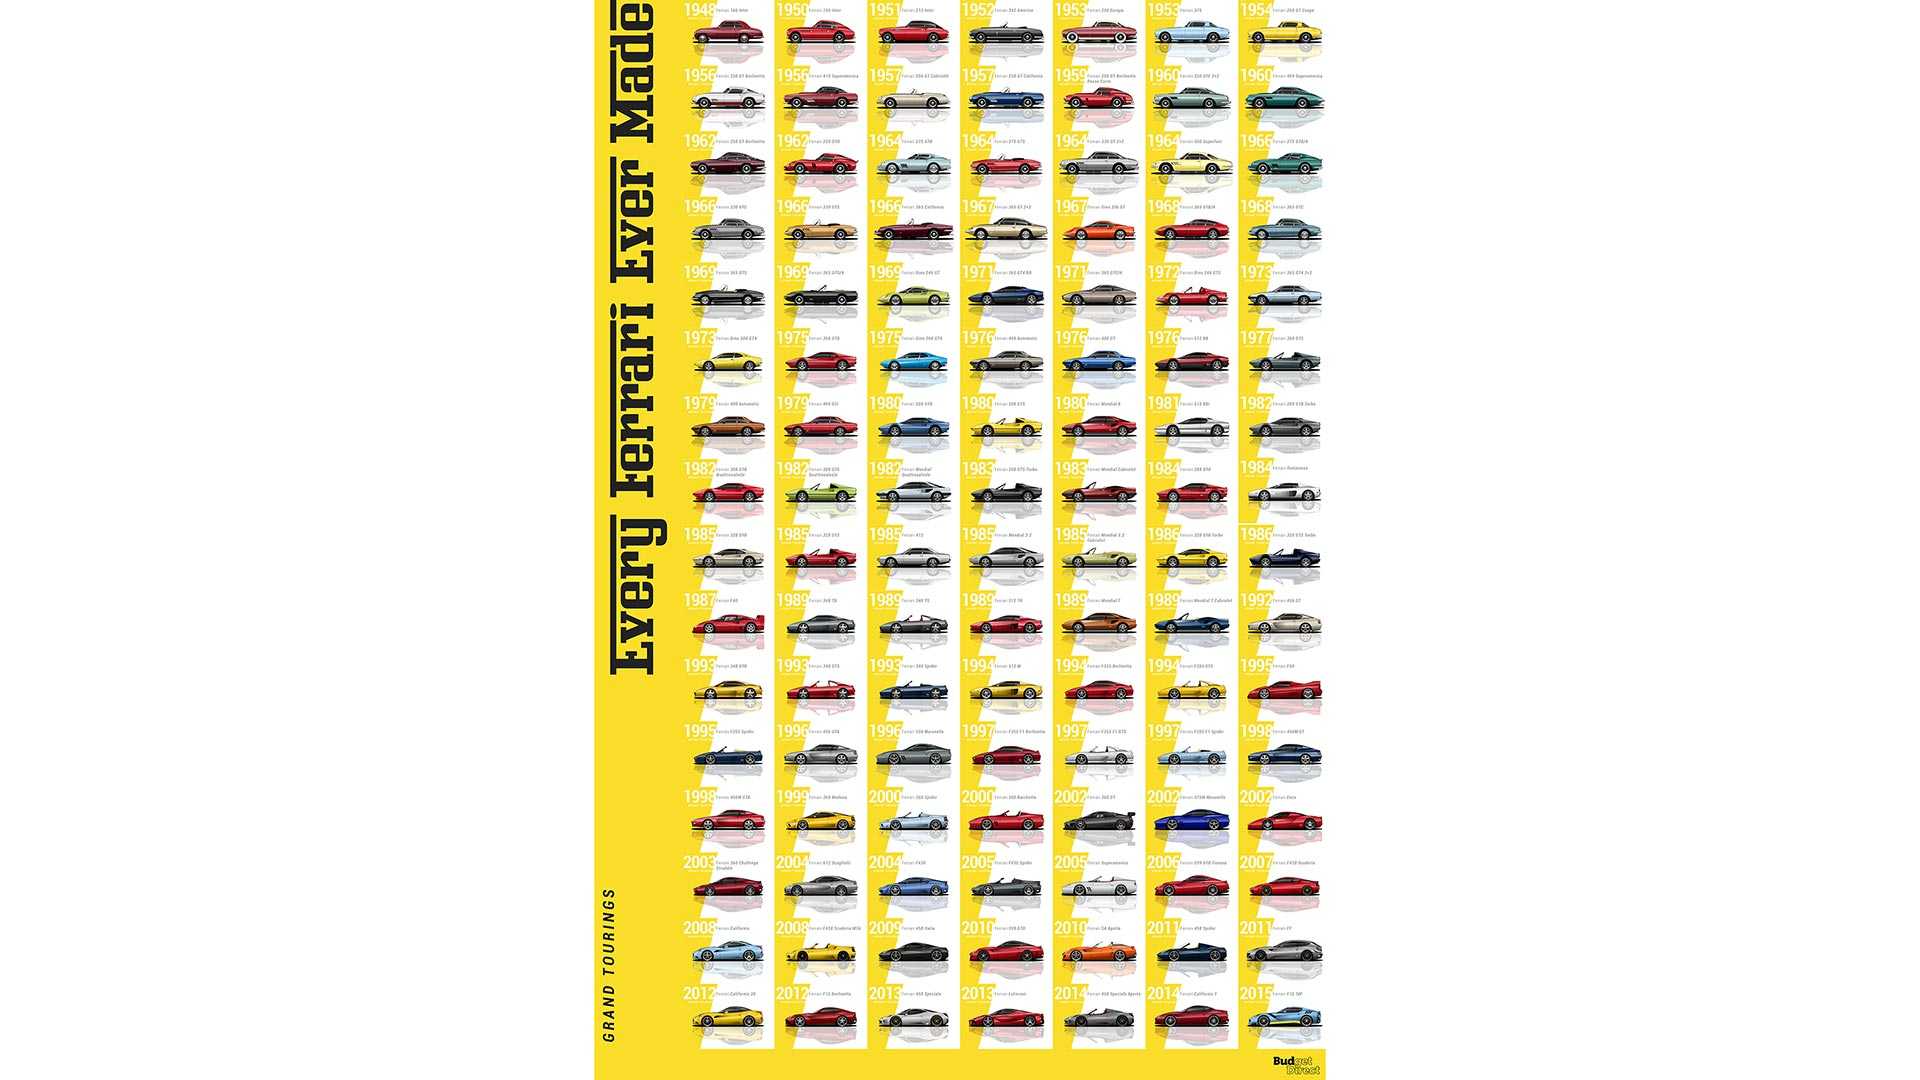 La evolución de los modelos de Ferrari